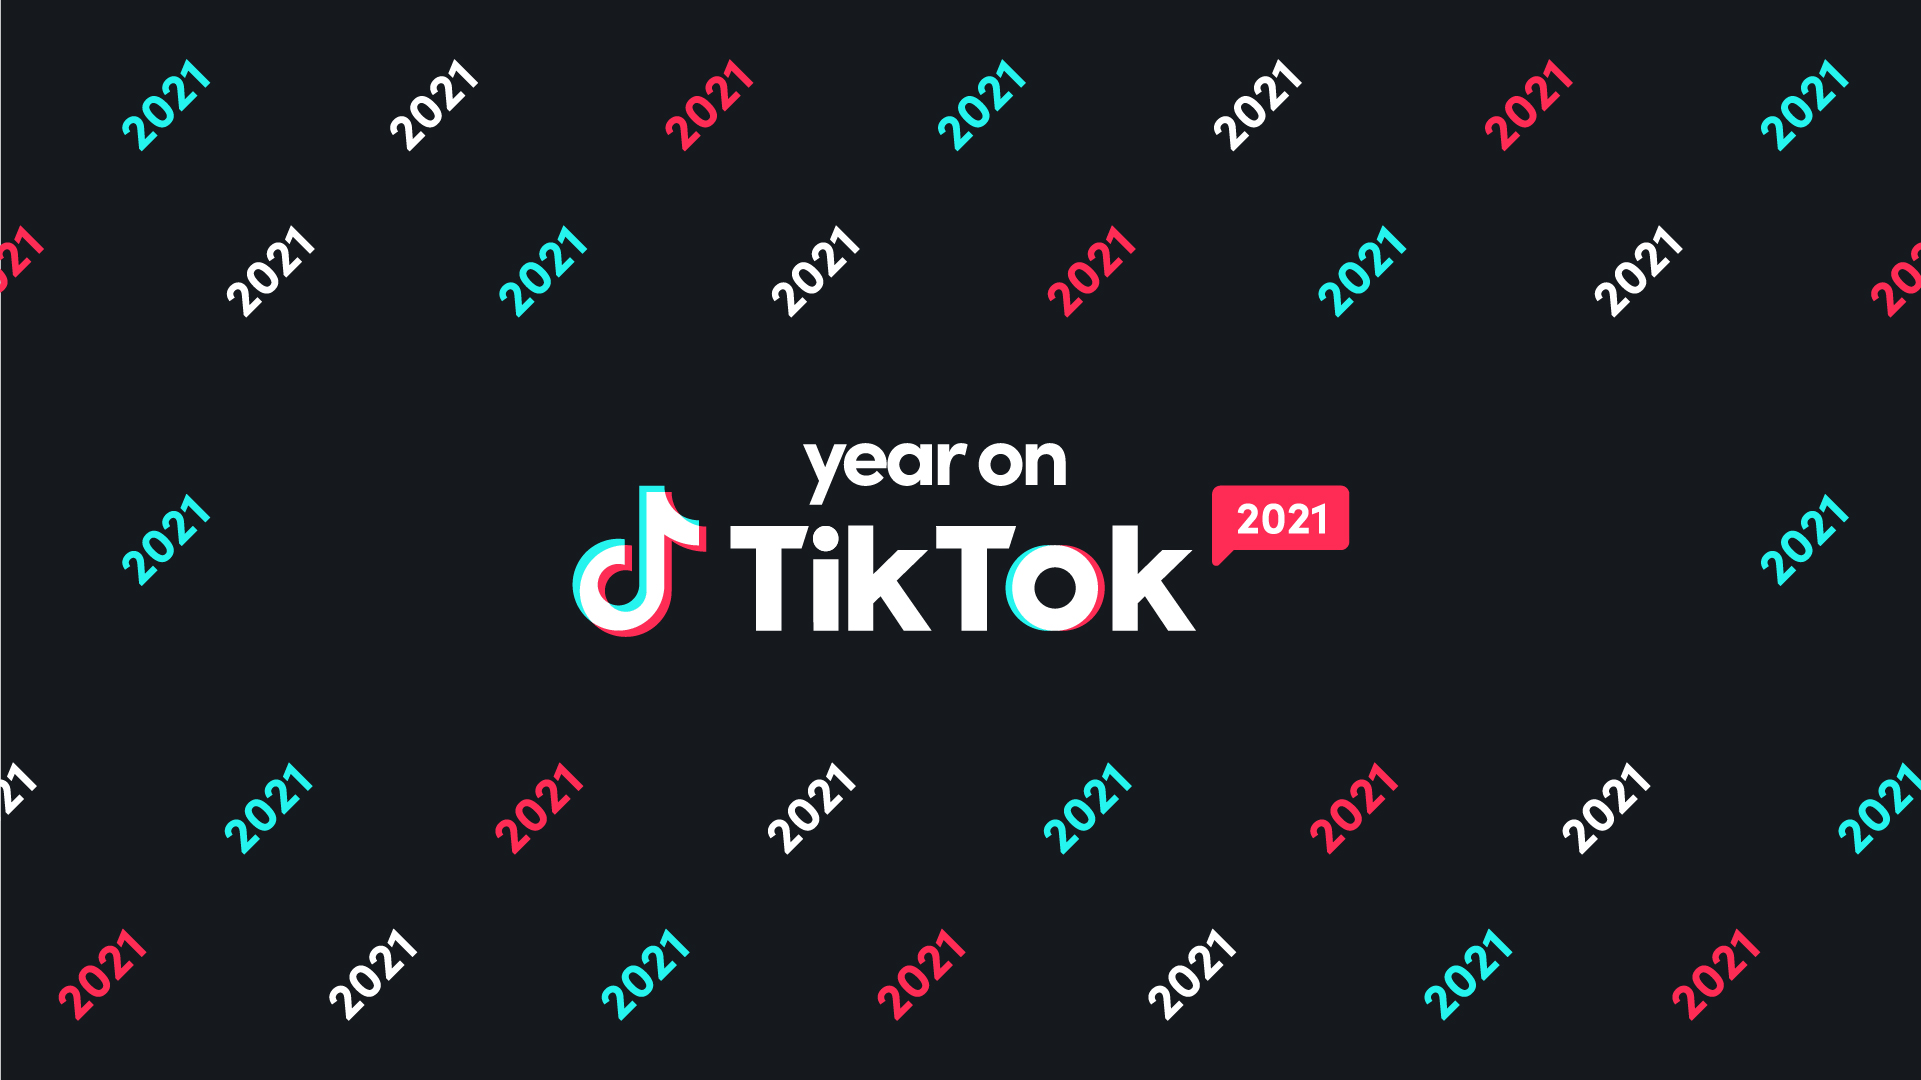 TikTok: Hãy cùng khám phá và đắm chìm vào thế giới sáng tạo đầy màu sắc trên TikTok với những video vô cùng ấn tượng và hấp dẫn. Chắc chắn bạn sẽ không muốn bỏ qua những nội dung độc đáo và thú vị trên nền tảng này.